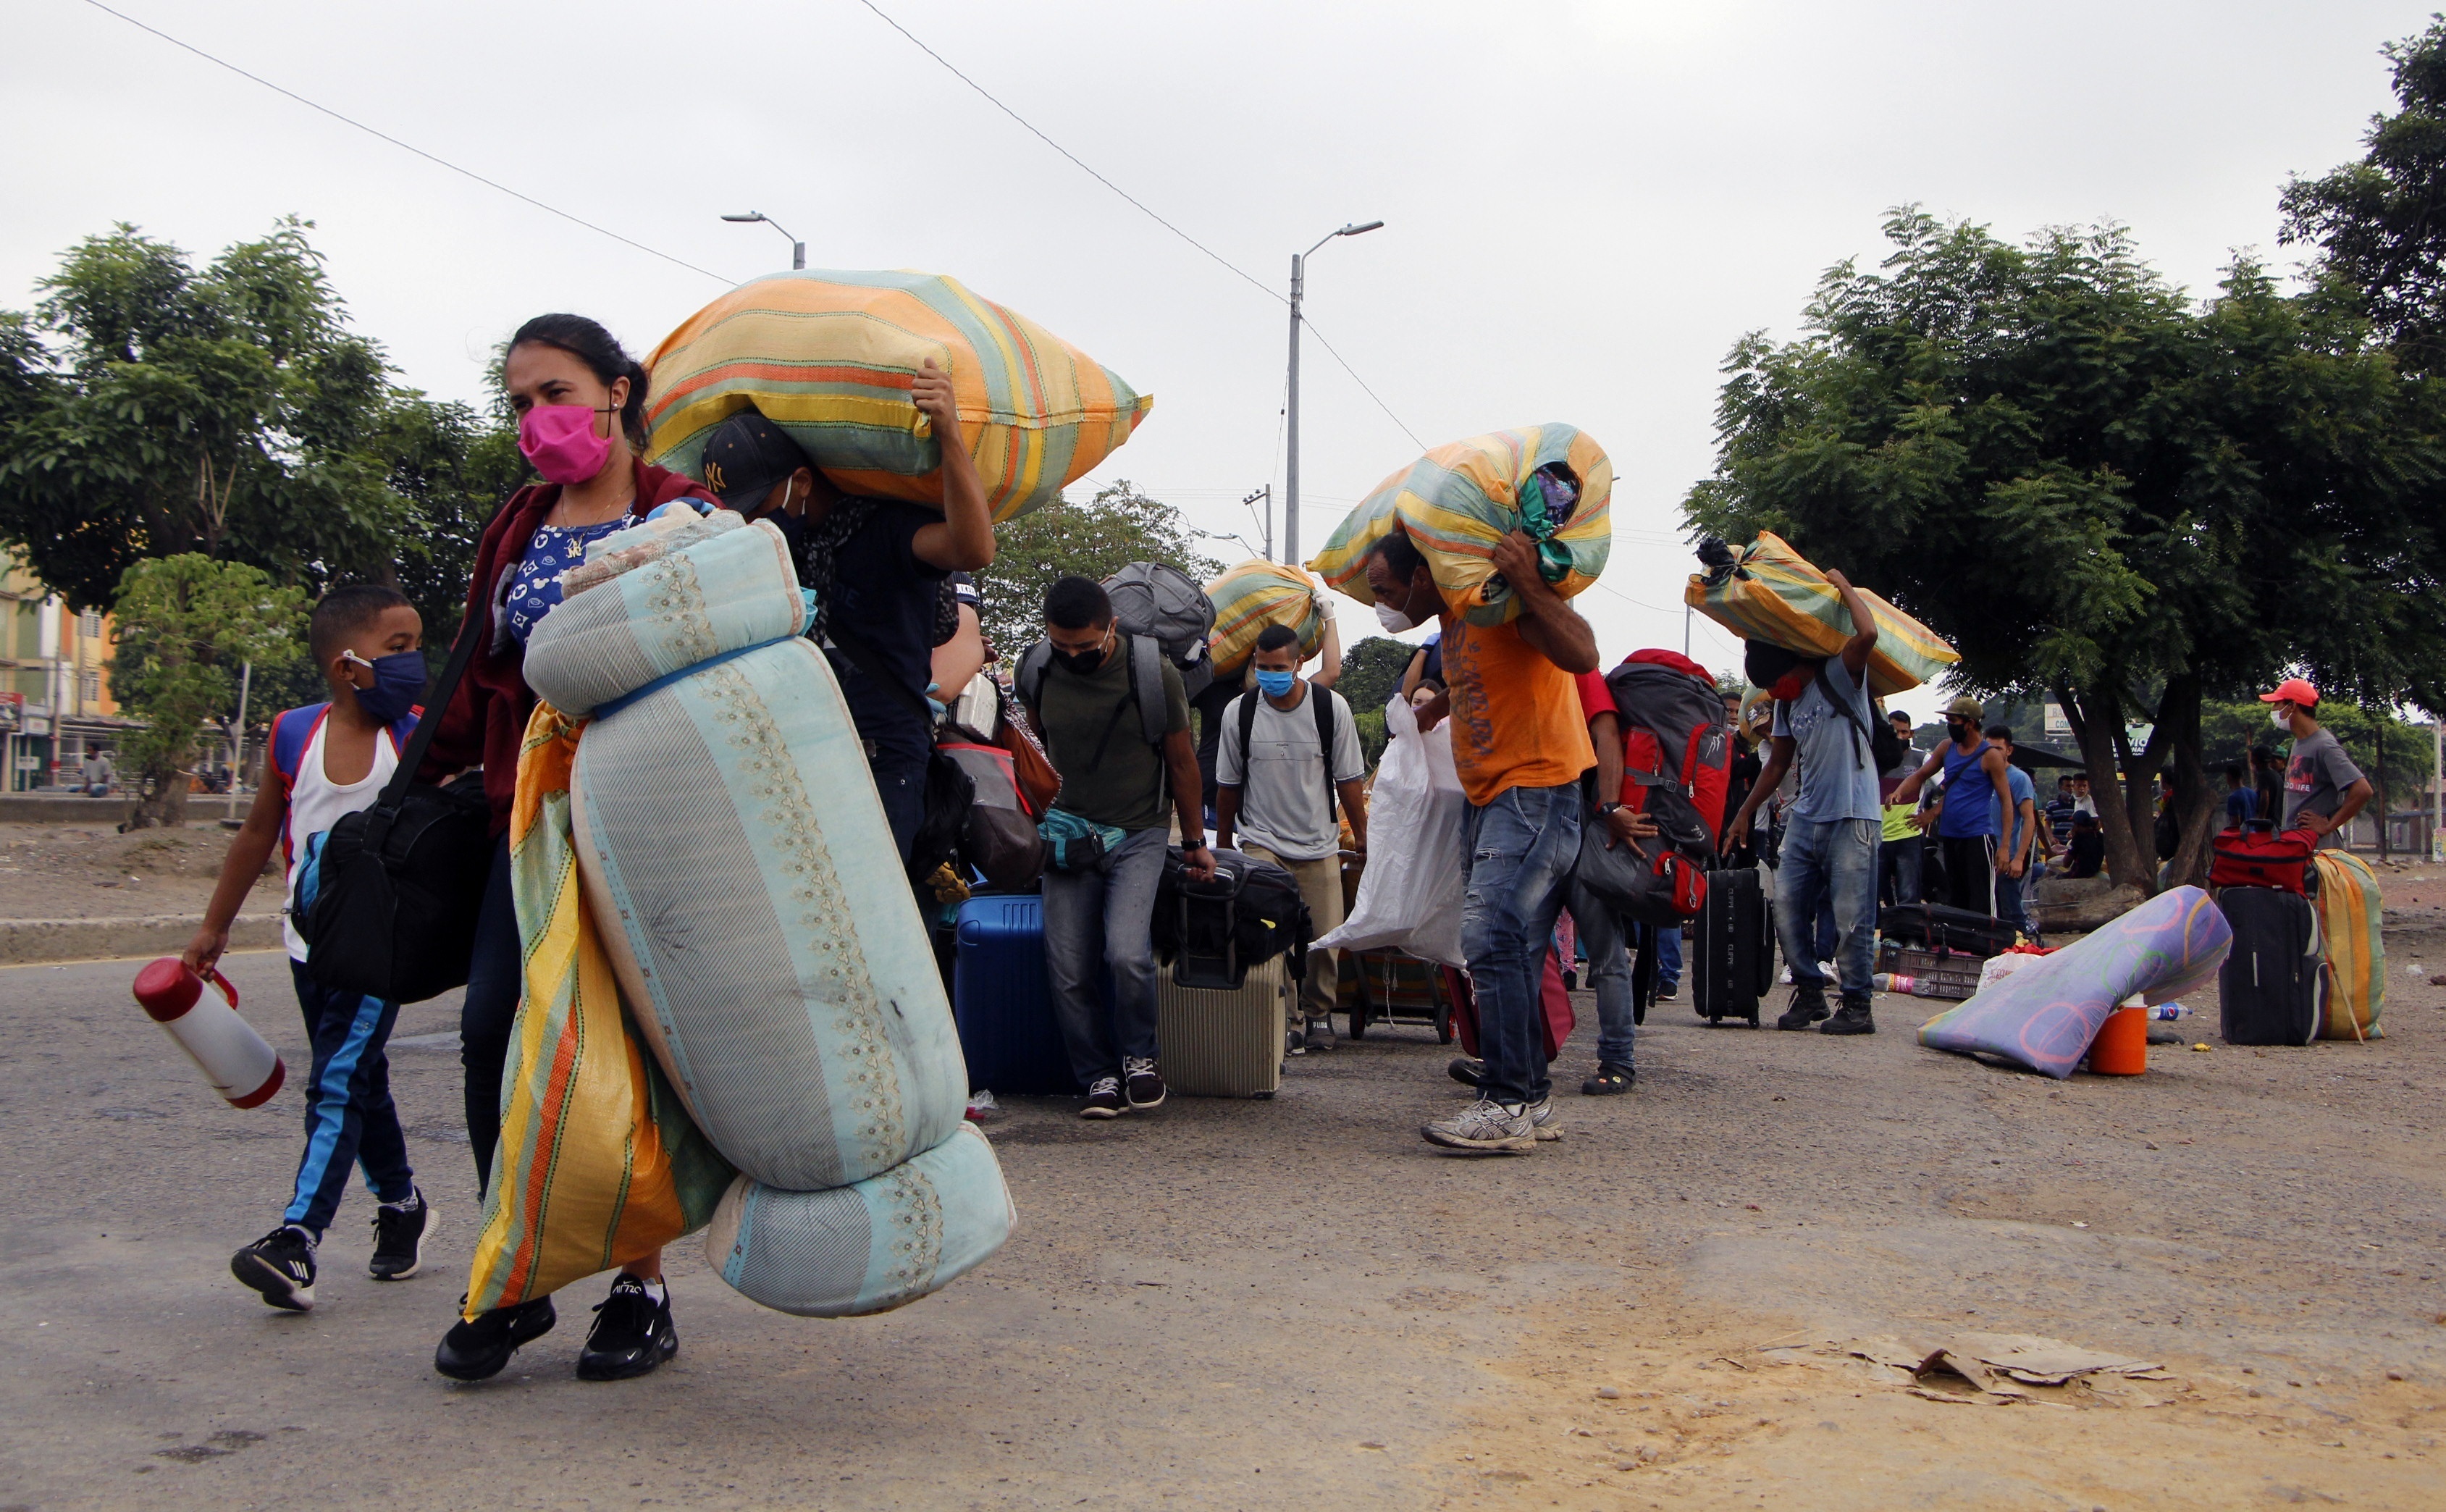 Venezolanos encabezan la lista de solicitudes de asilo en Brasil